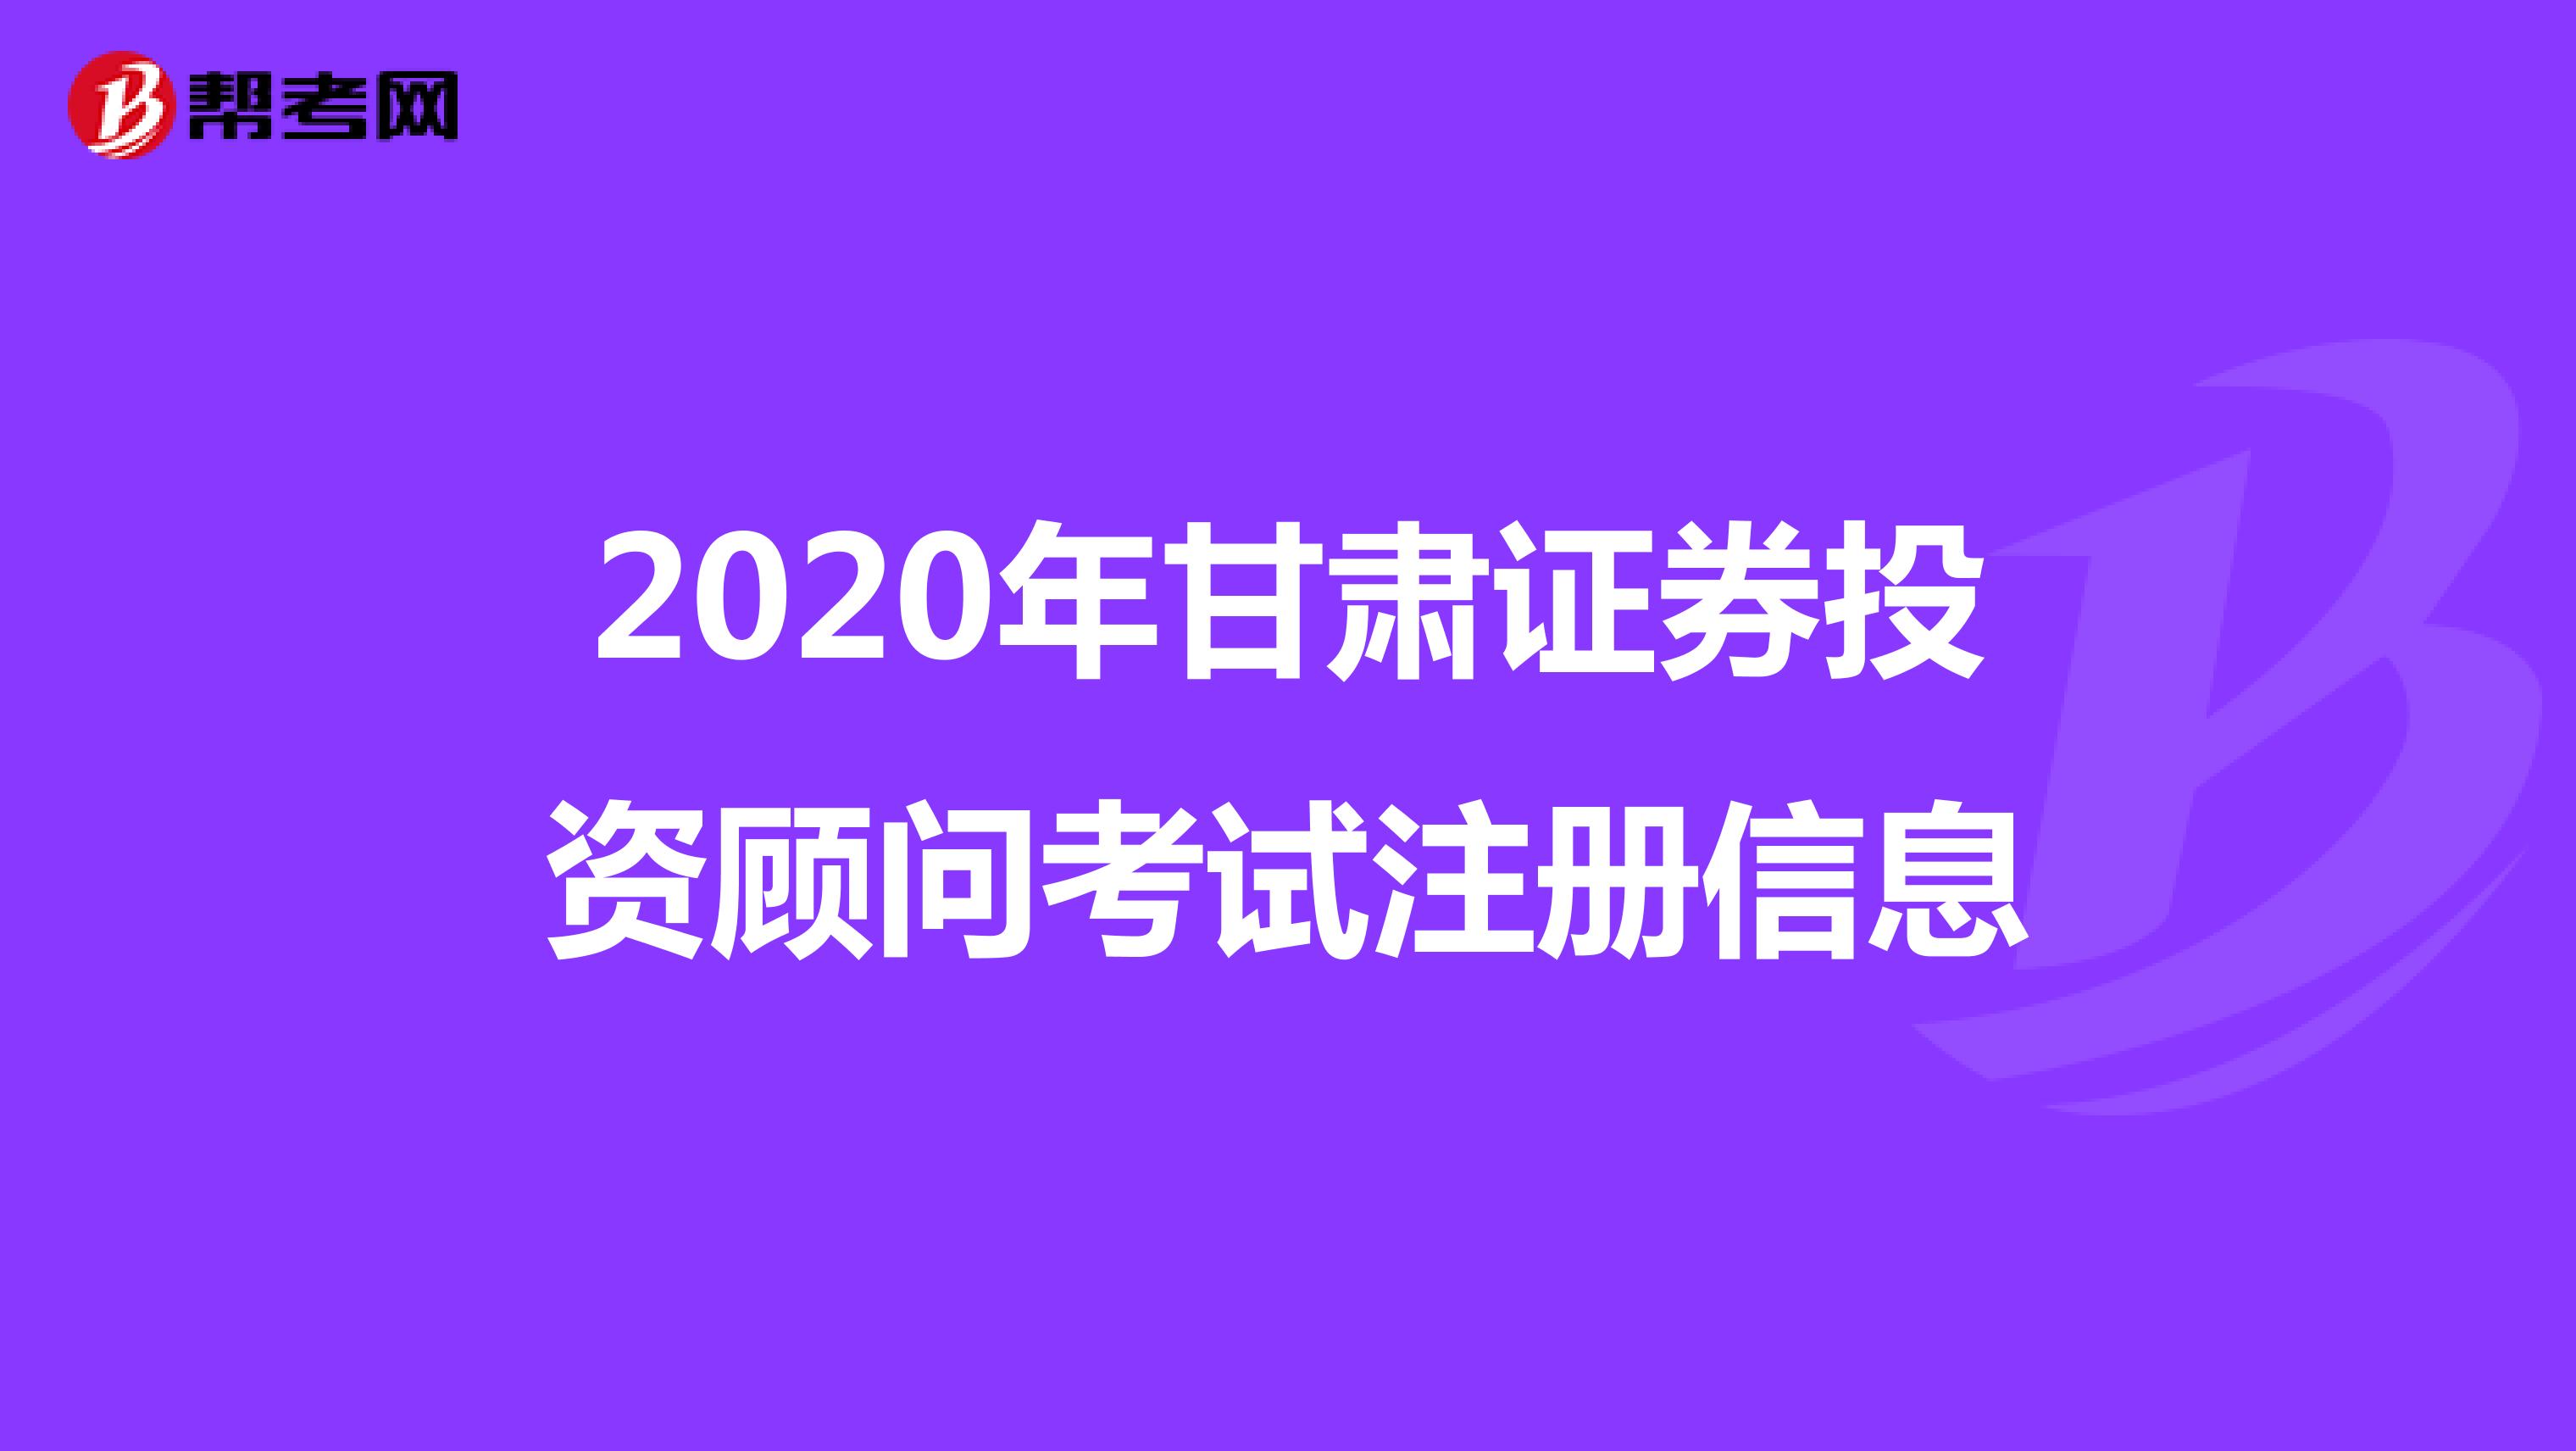 2020年甘肃证券投资顾问考试注册信息